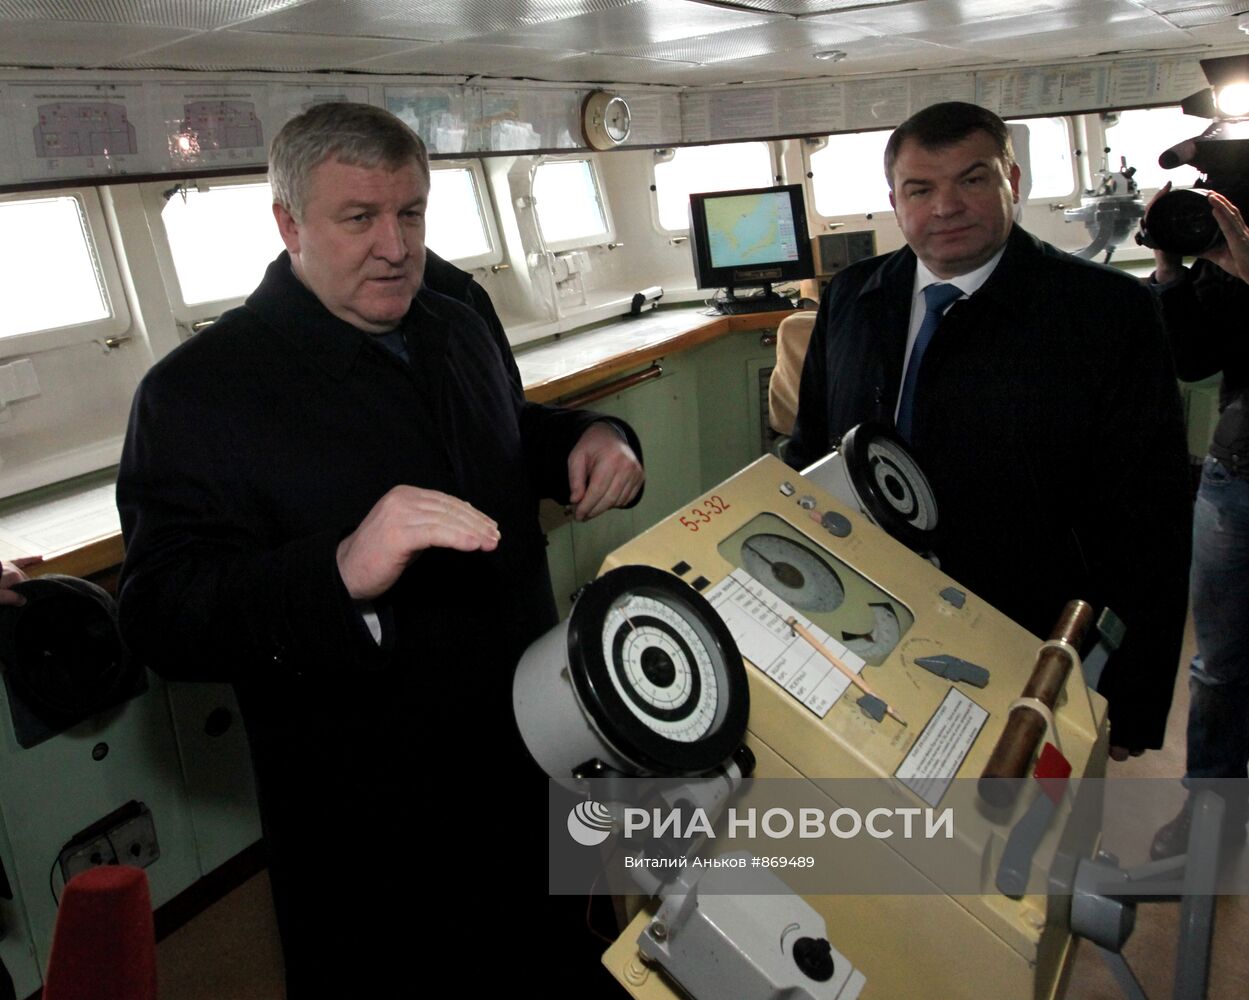 Анатолий Сердюков посетил ракетный крейсер "Варяг"